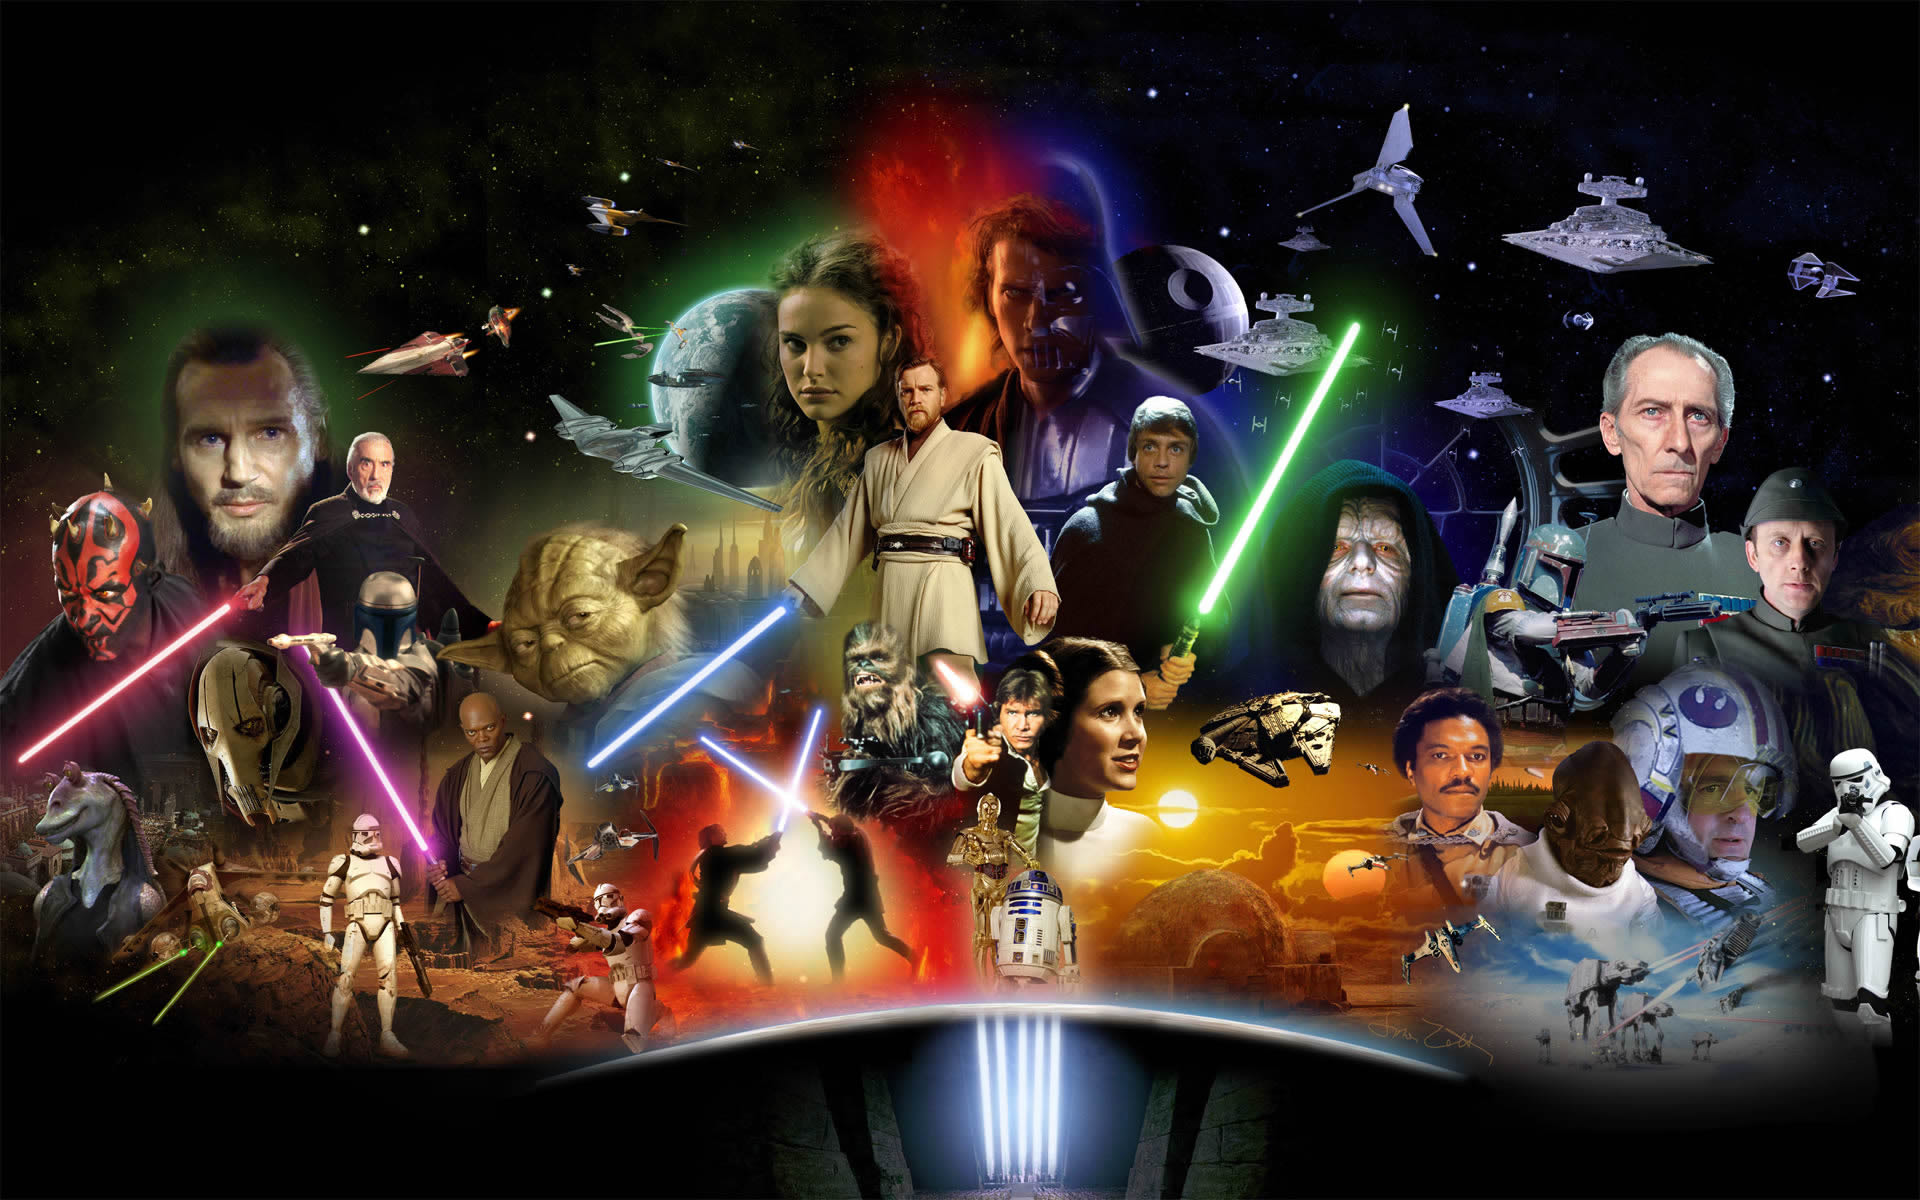 40 Epic Star Wars Wallpapers - 3D, Digital paintings, Movies ...